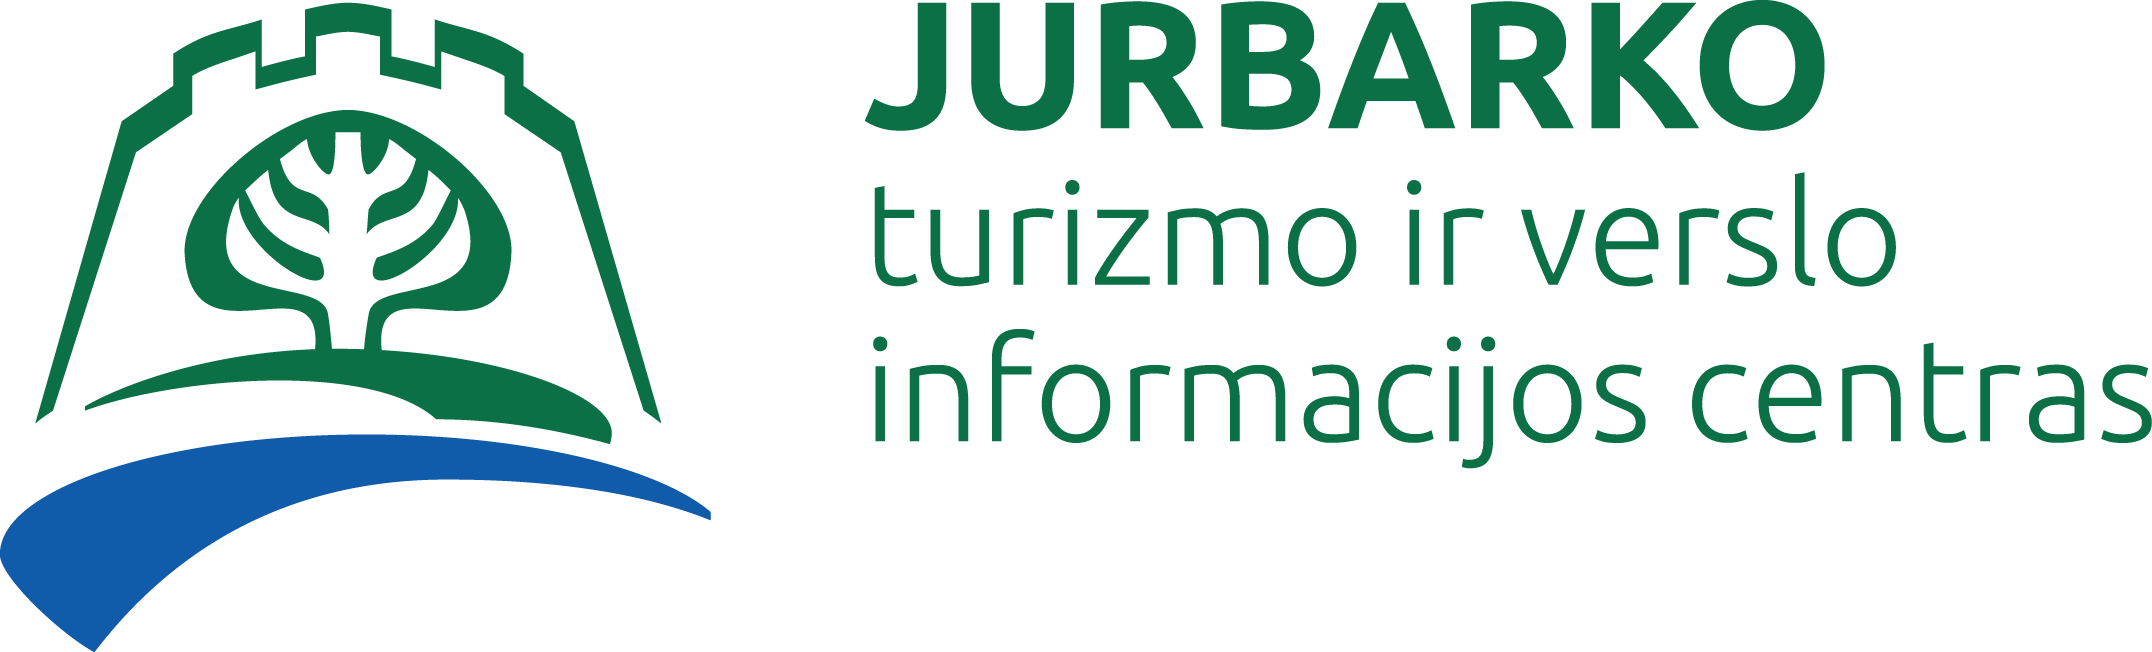 Jurbarko turizmo ir verslo inforacijos centras